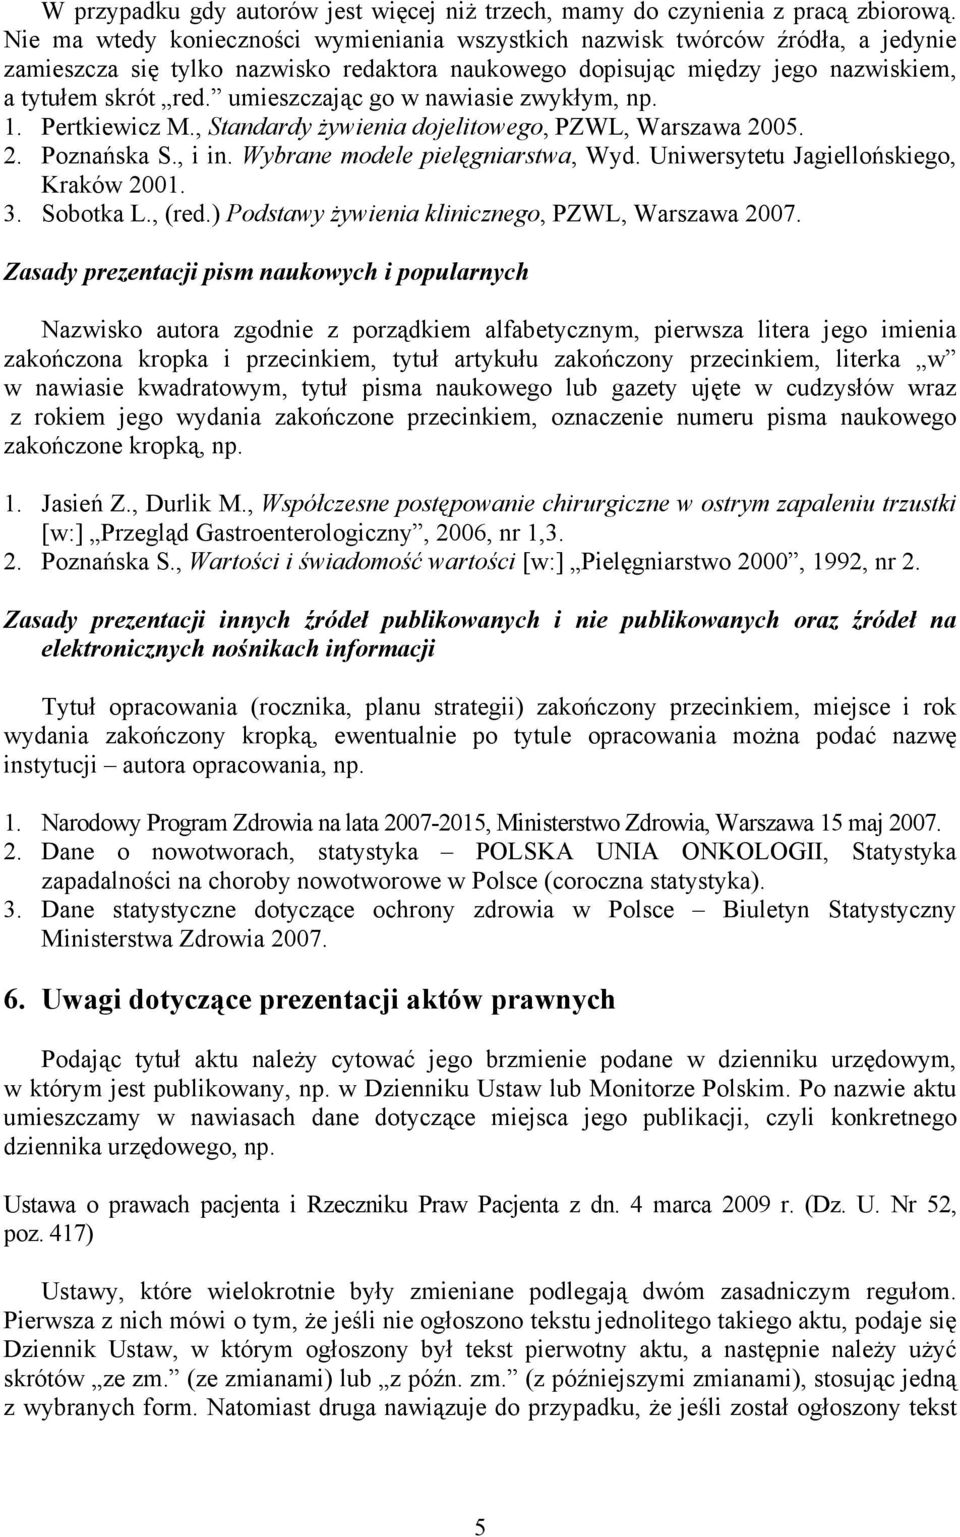 umieszczając go w nawiasie zwykłym, np. 1. Pertkiewicz M., Standardy Ŝywienia dojelitowego, PZWL, Warszawa 2005. 2. Poznańska S., i in. Wybrane modele pielęgniarstwa, Wyd.